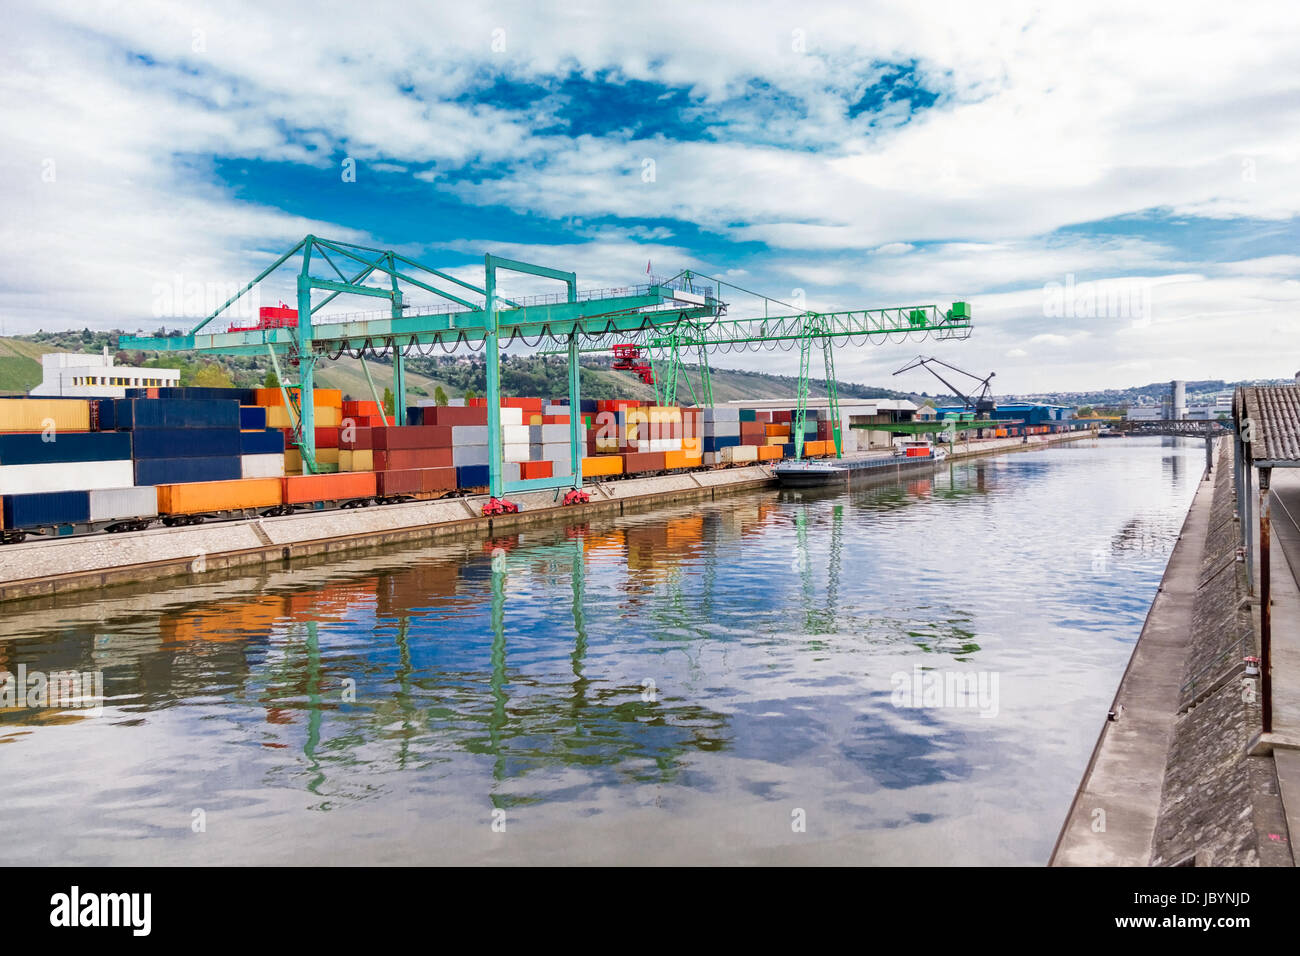 Anlegestelle im Hafen mit gestapelten Containern am Dock für Import und Export Cargo mit blauem Himmel Stock Photo